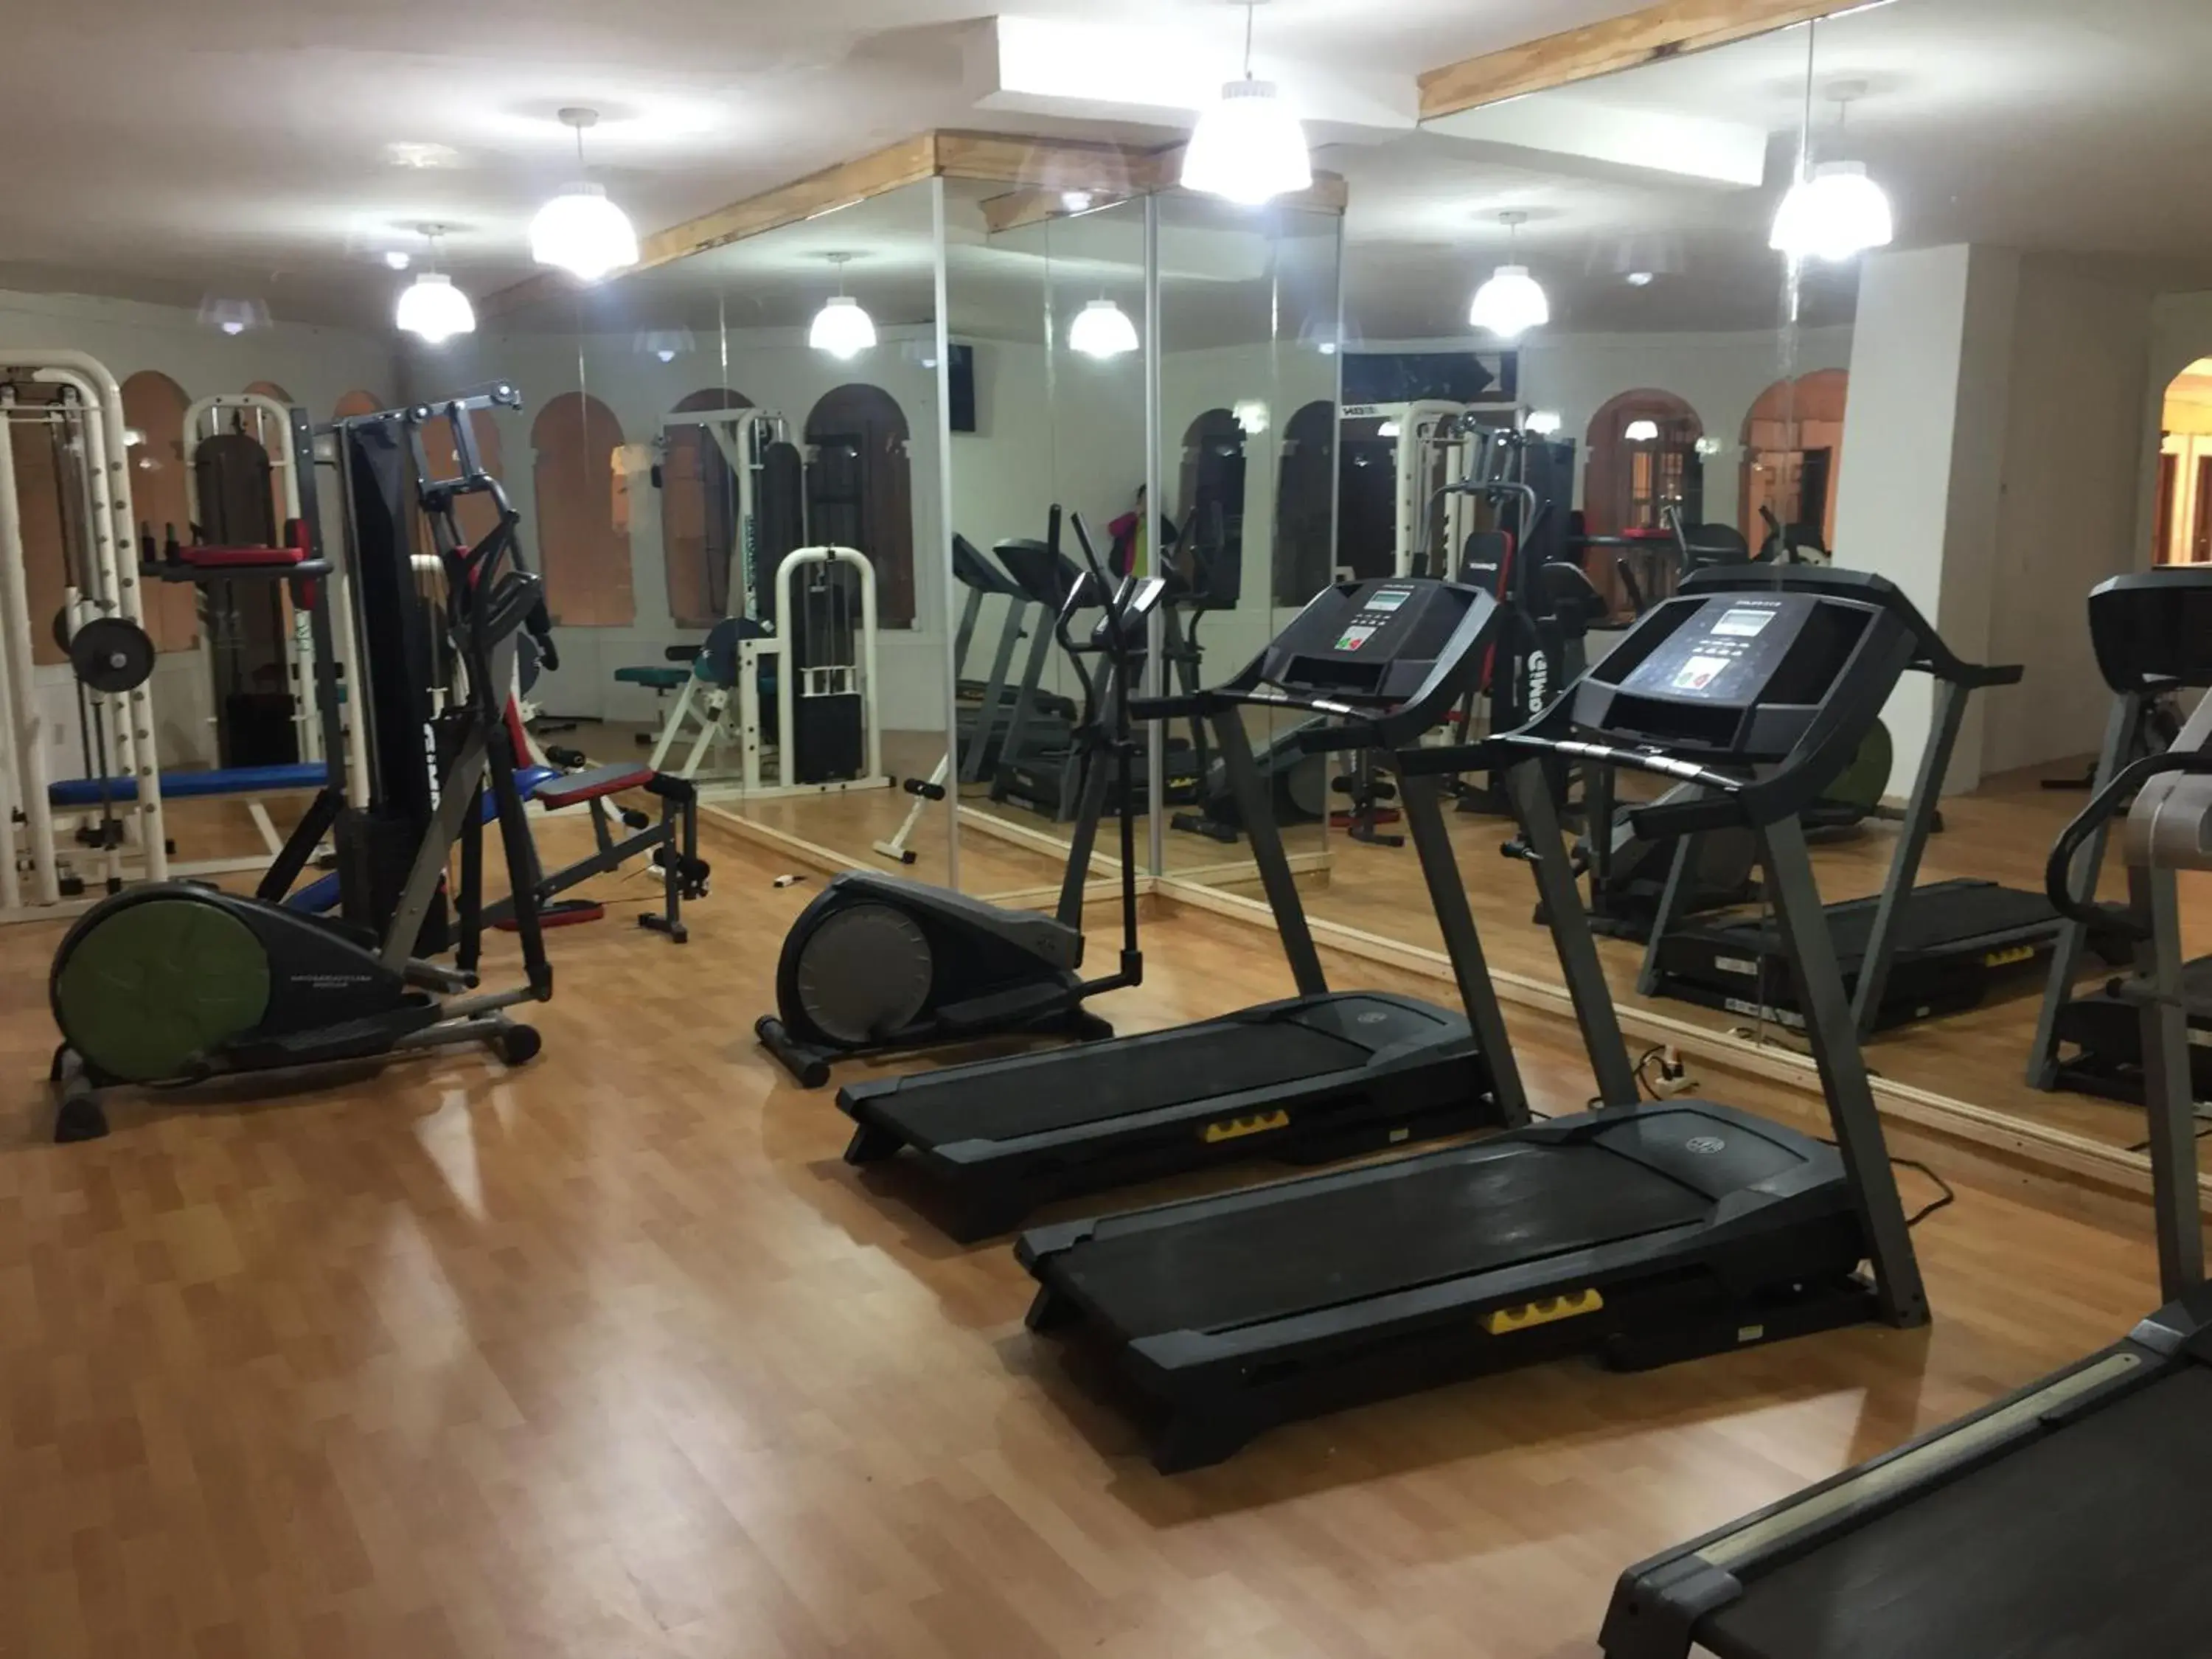 Fitness centre/facilities, Fitness Center/Facilities in Meson De La Merced